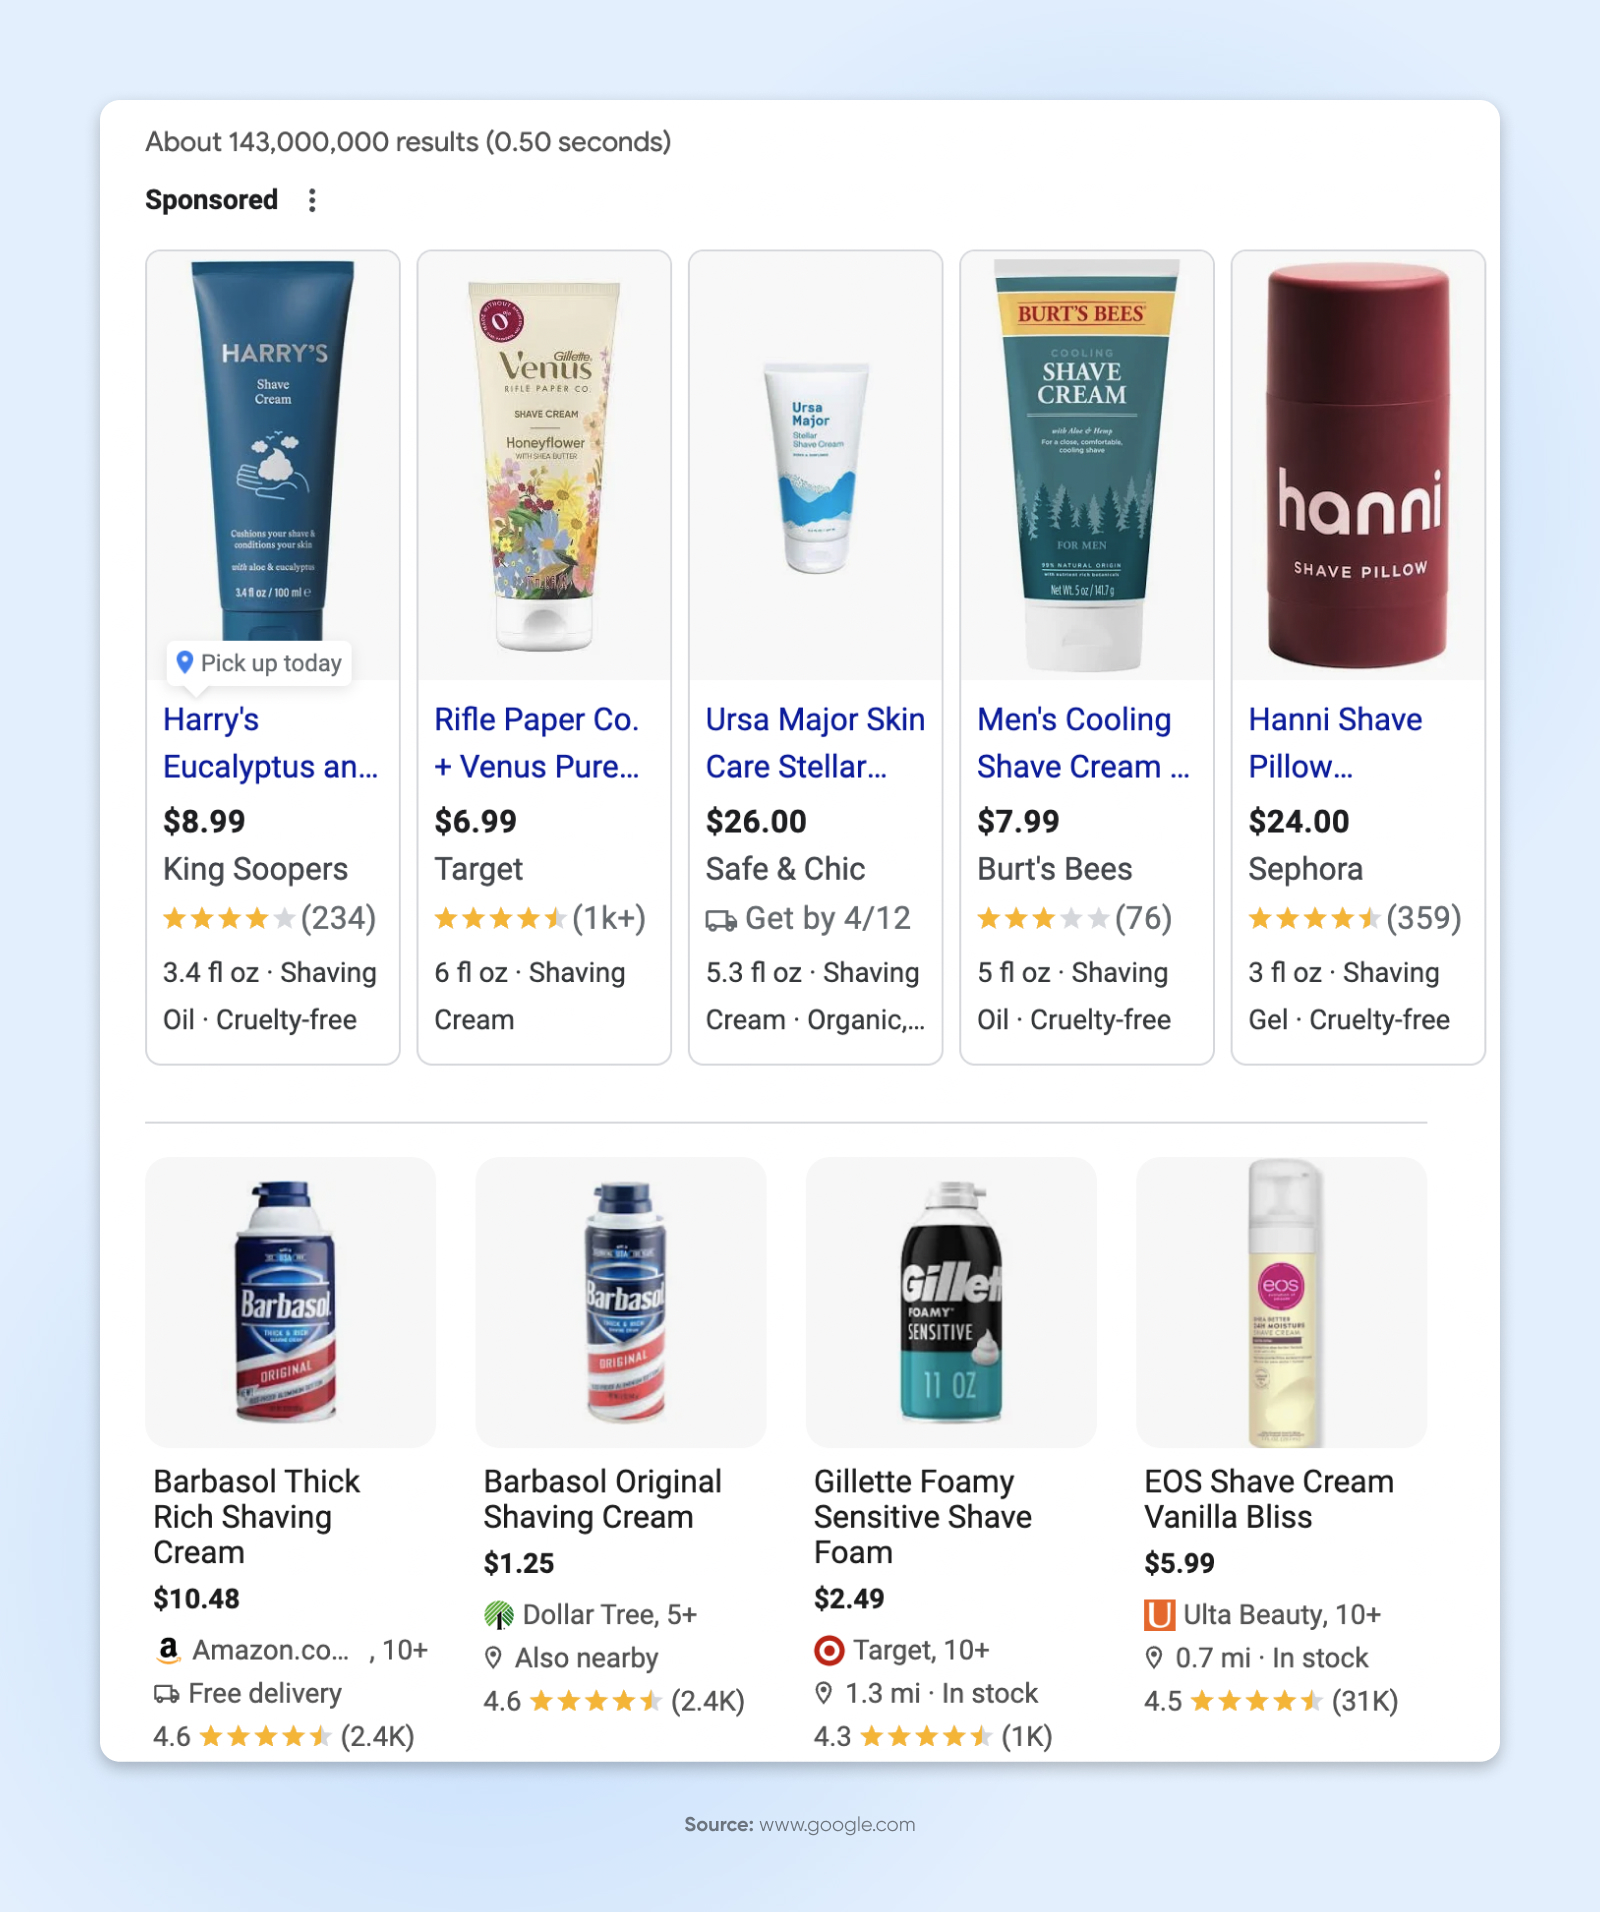 Sponsored shaving cream listings from Google